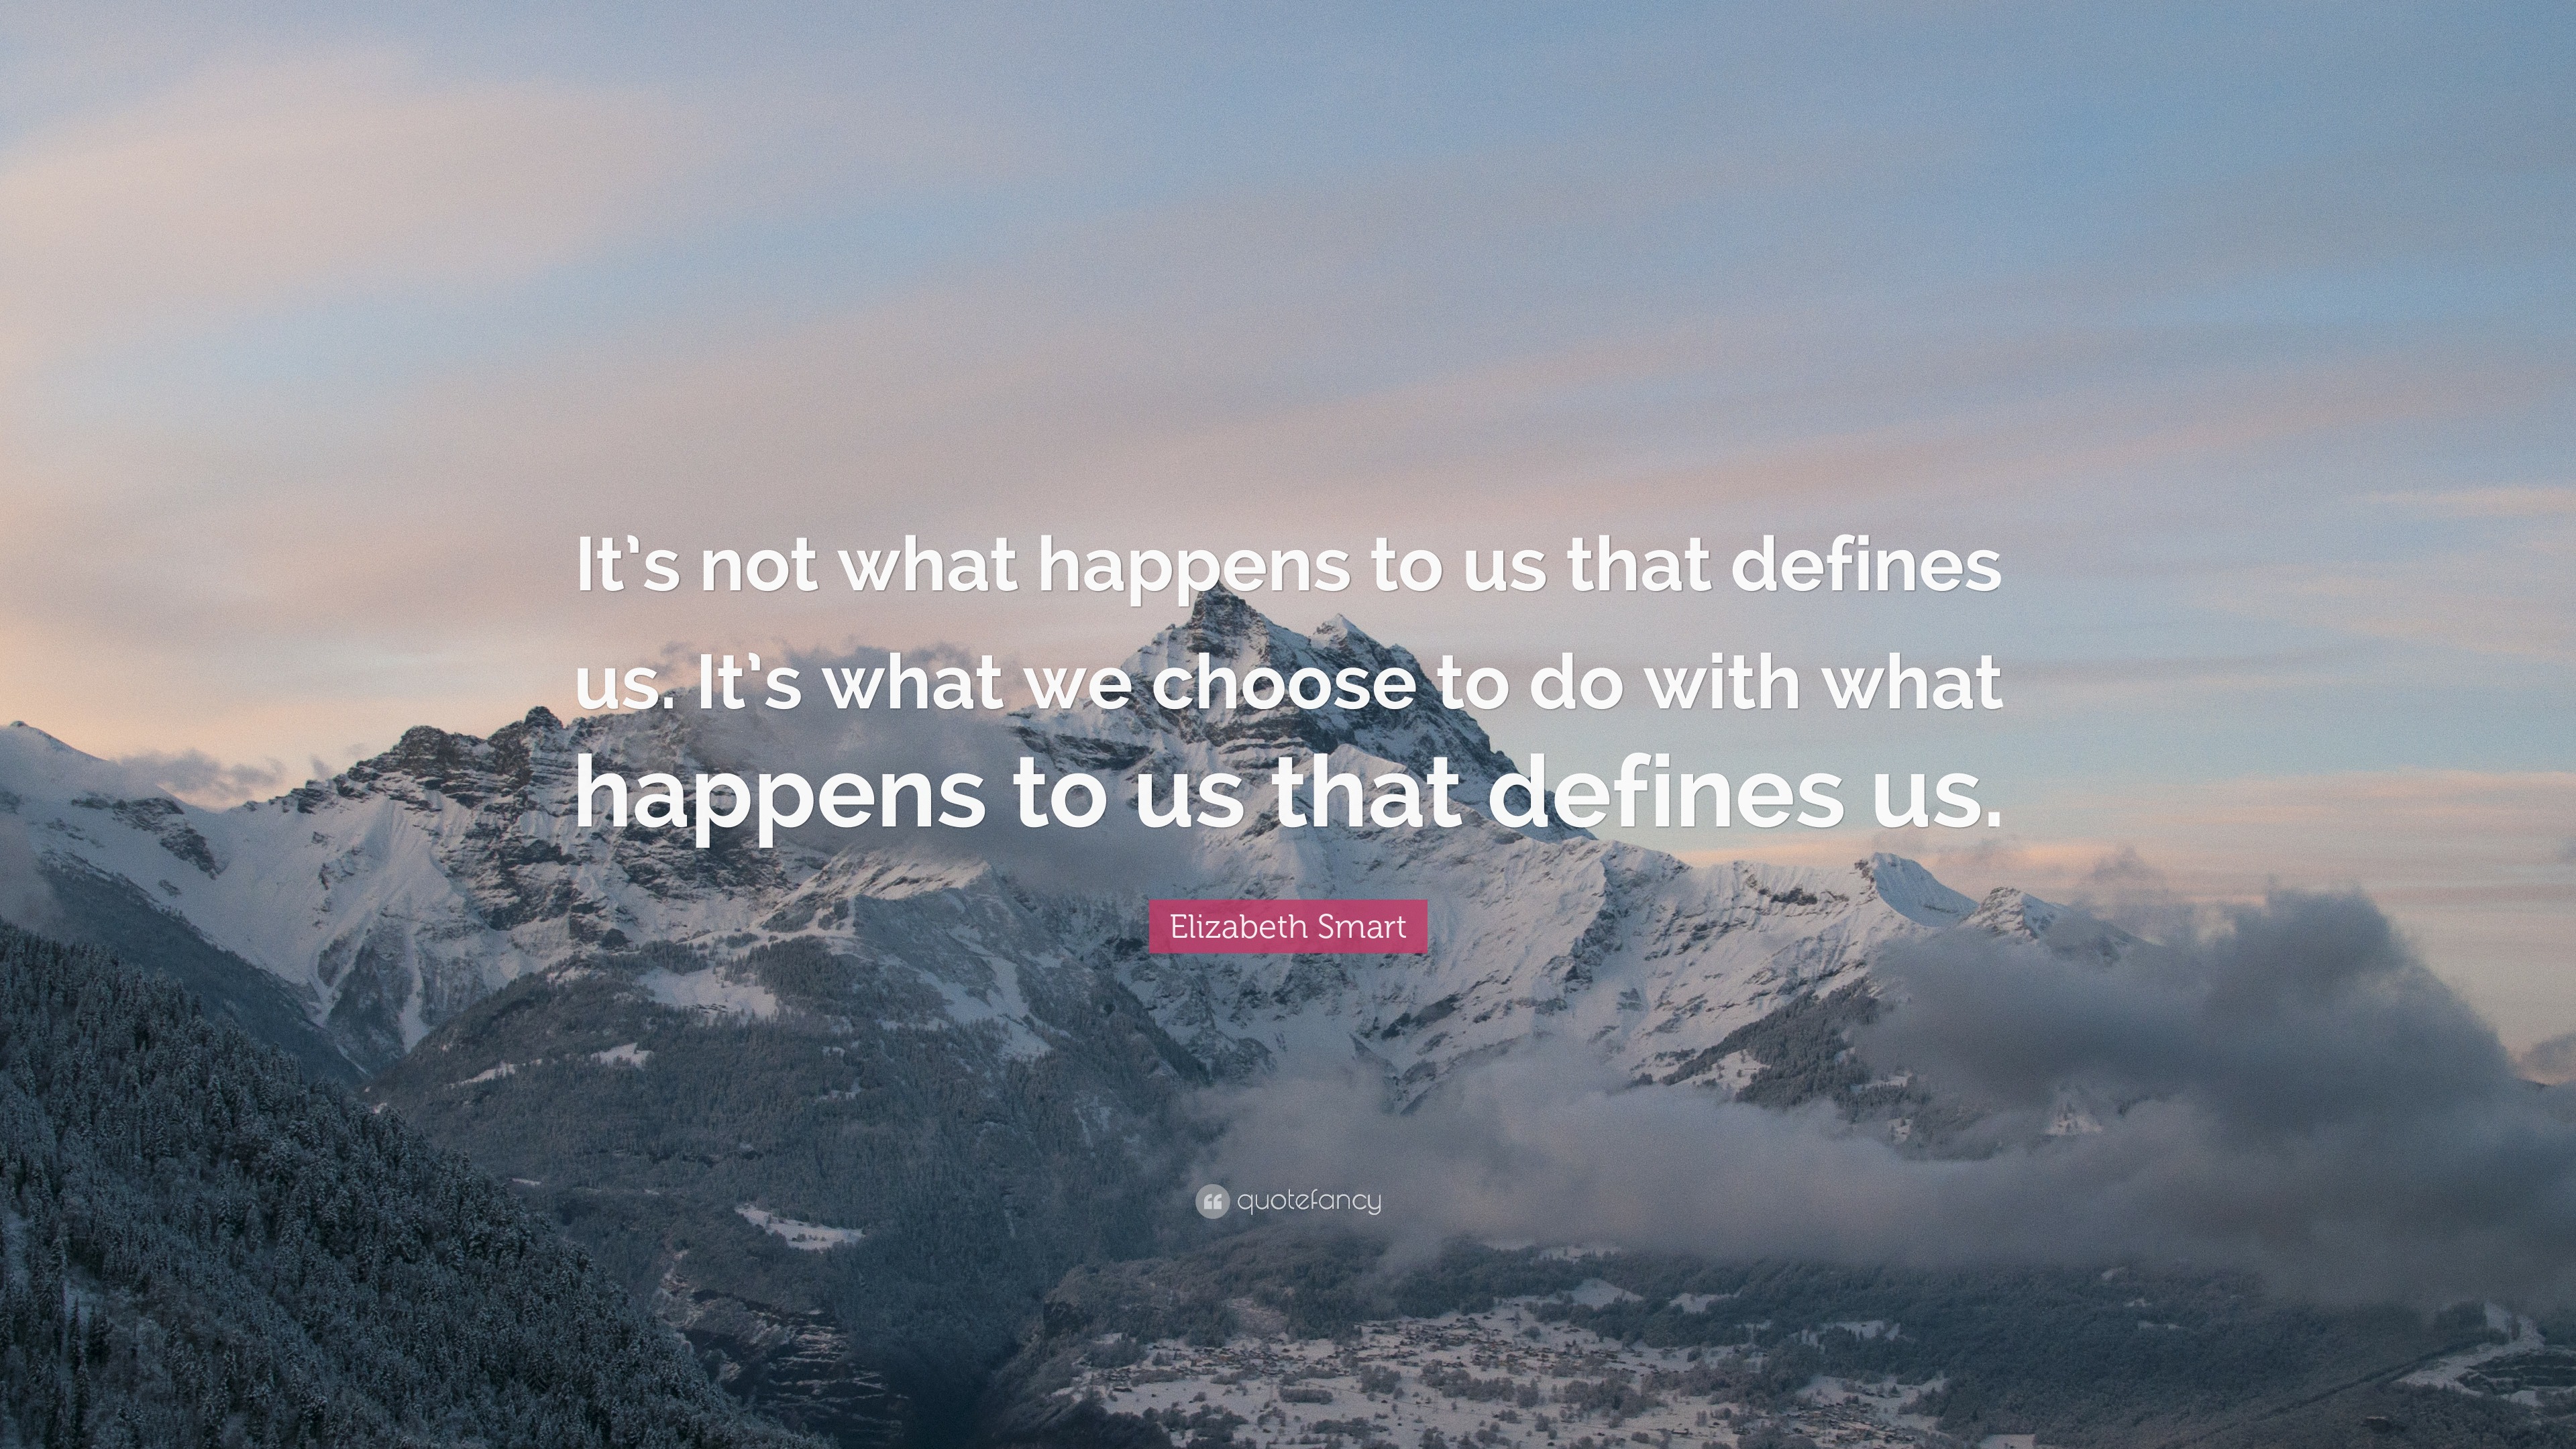 Elizabeth Smart Quote: “It’s not what happens to us that defines us. It ...